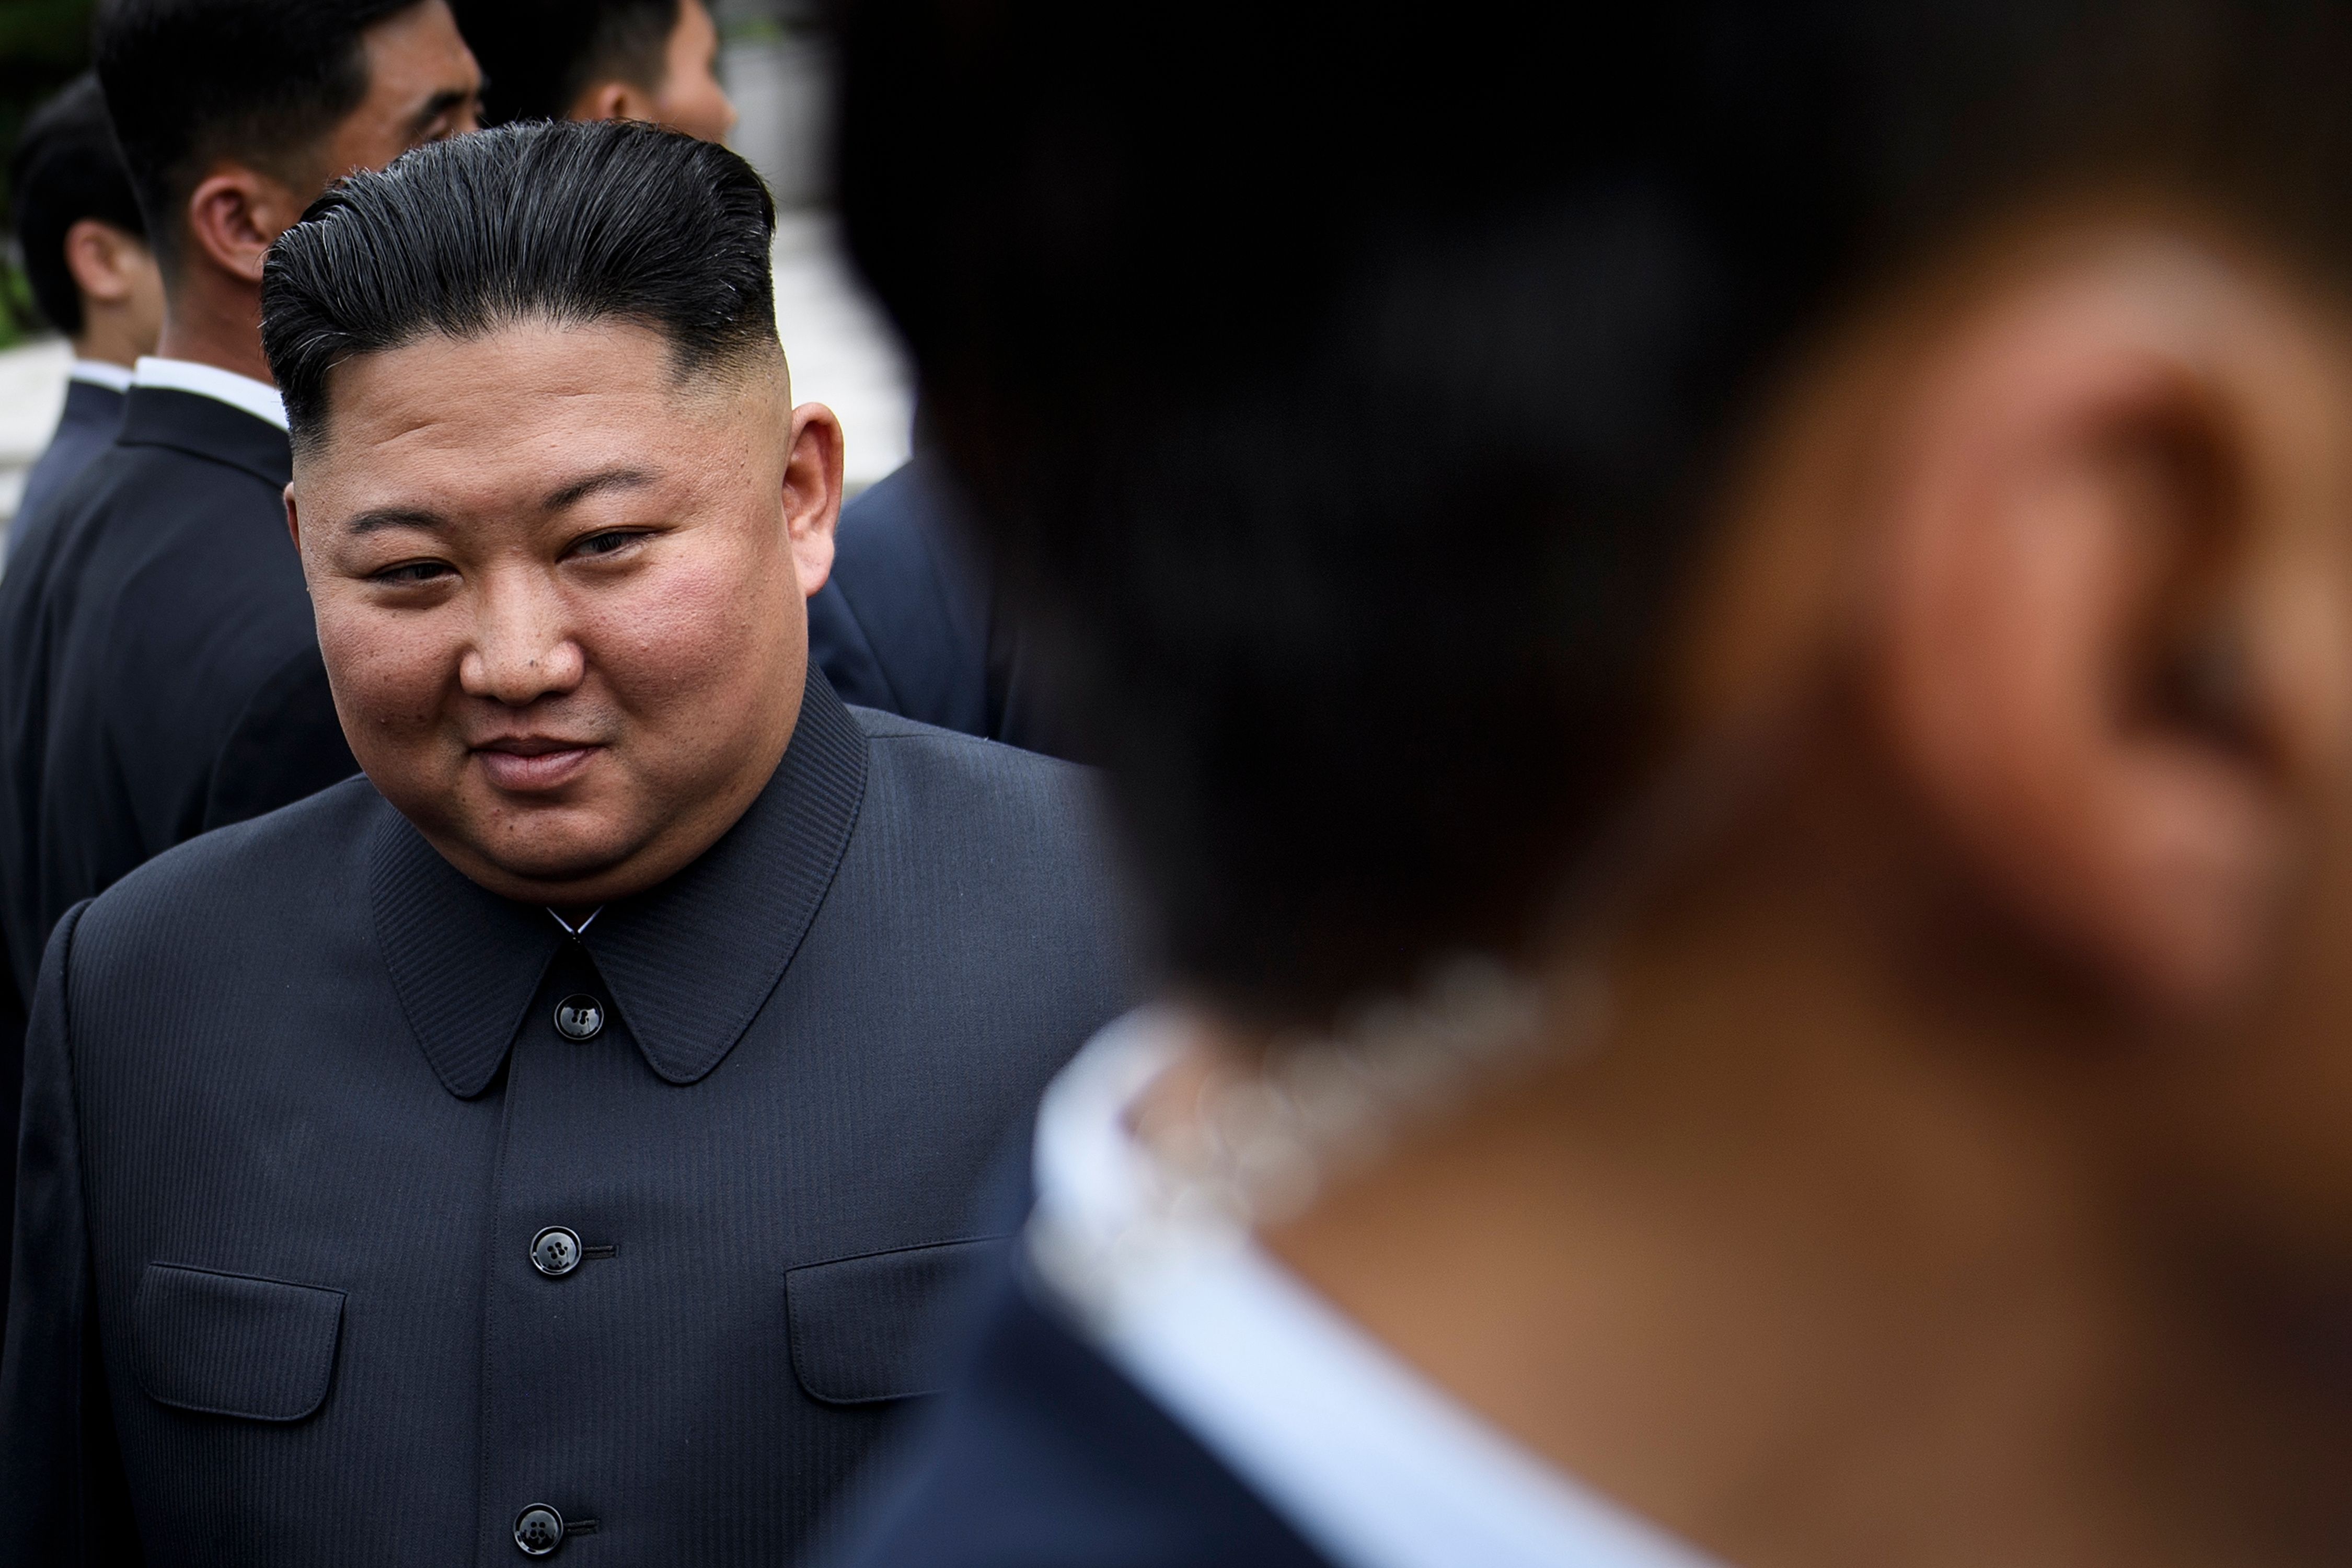 El líder norcoreano, Kim Jong-un no ha aparecido durante varios días, lo que ha provocado rumores, no confirmados sobre una posible muerte. (Foto Prensa Libre. AFP)